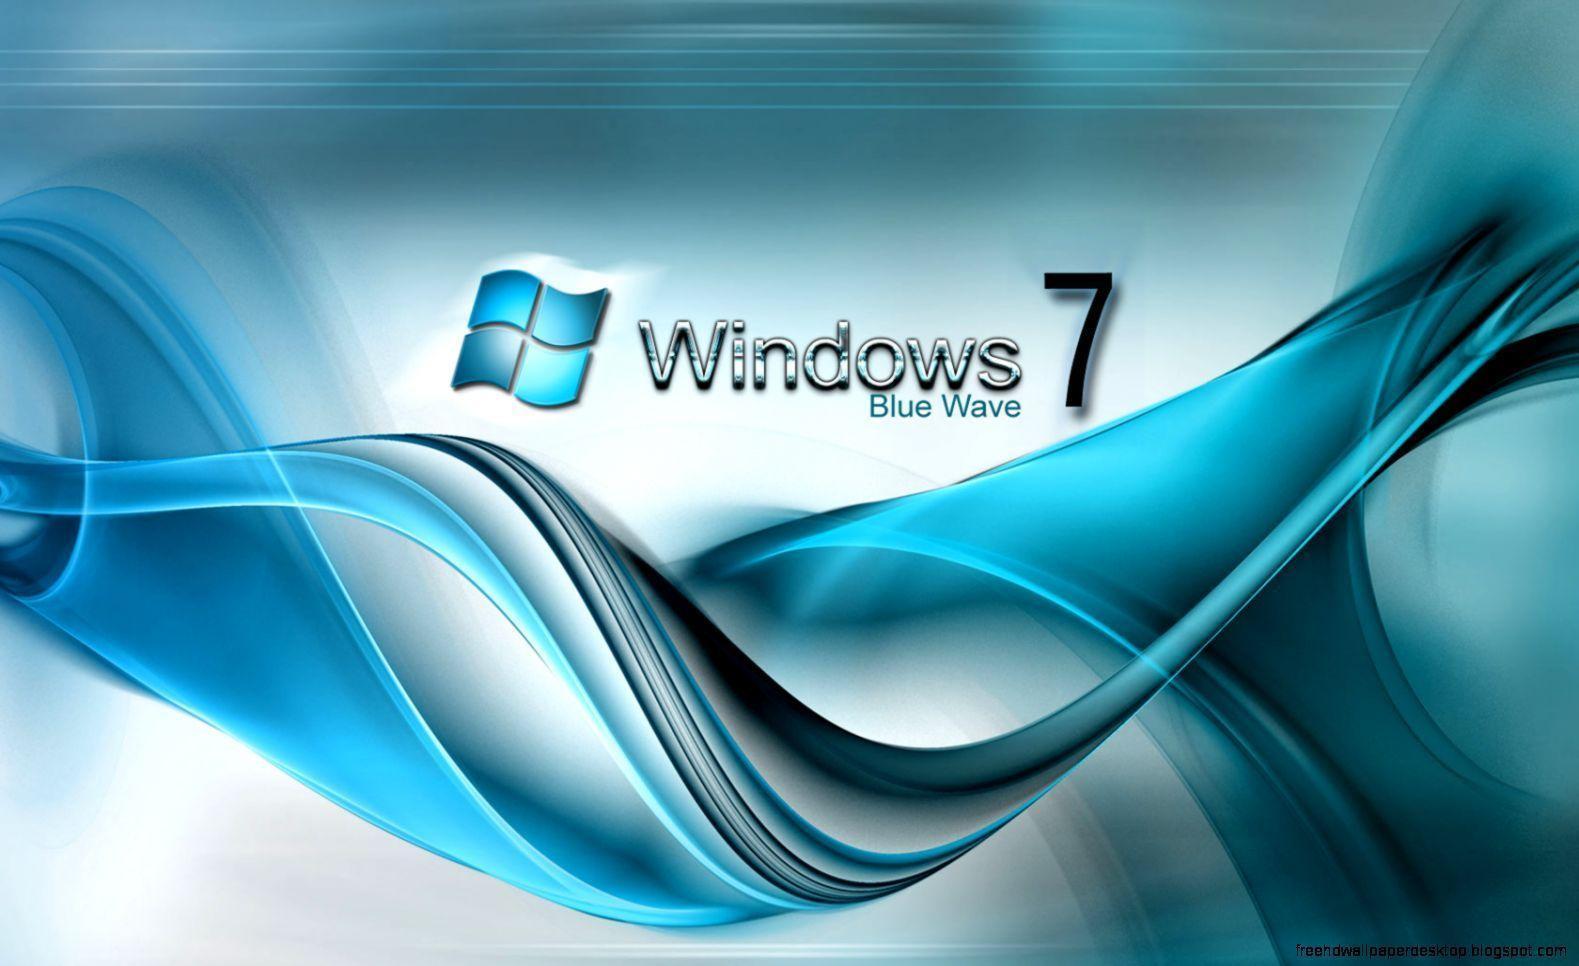 3D Logo Windows 7 Wallpaper. Free High Definition Wallpaper